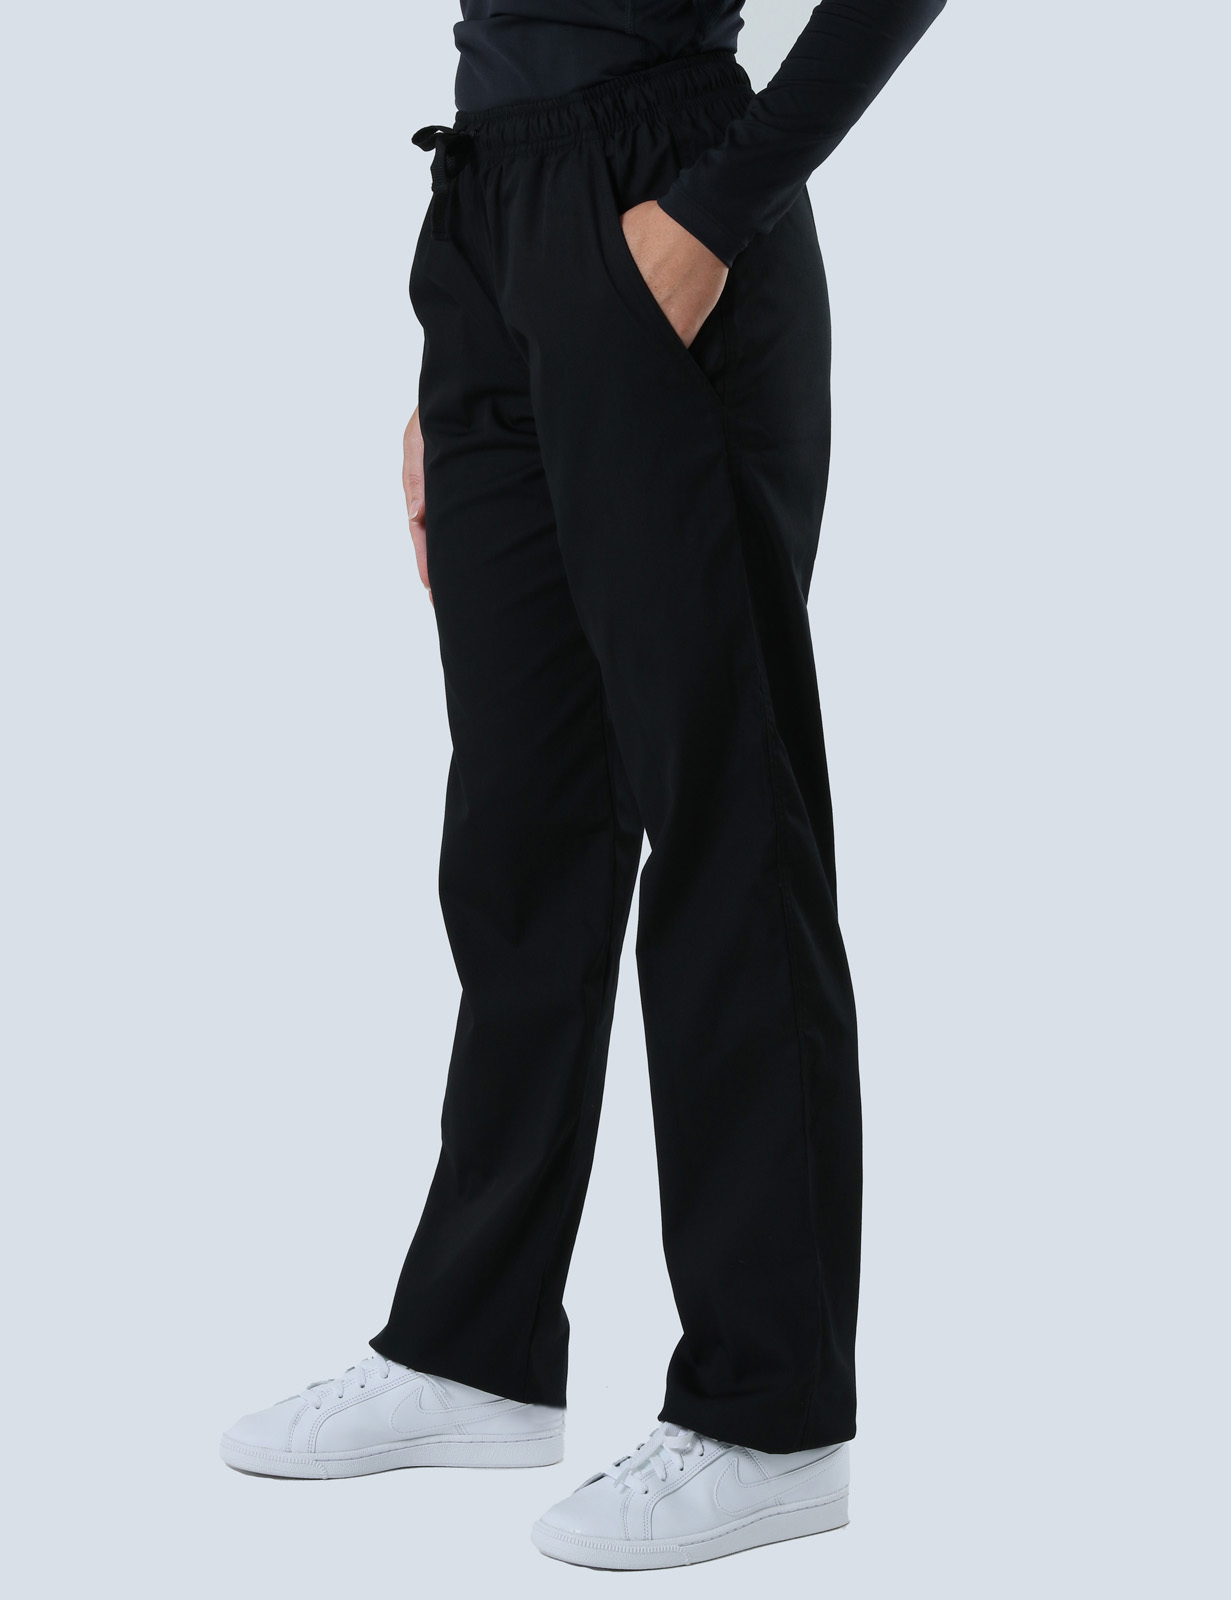 Women's Utility Pants - Black - X Small